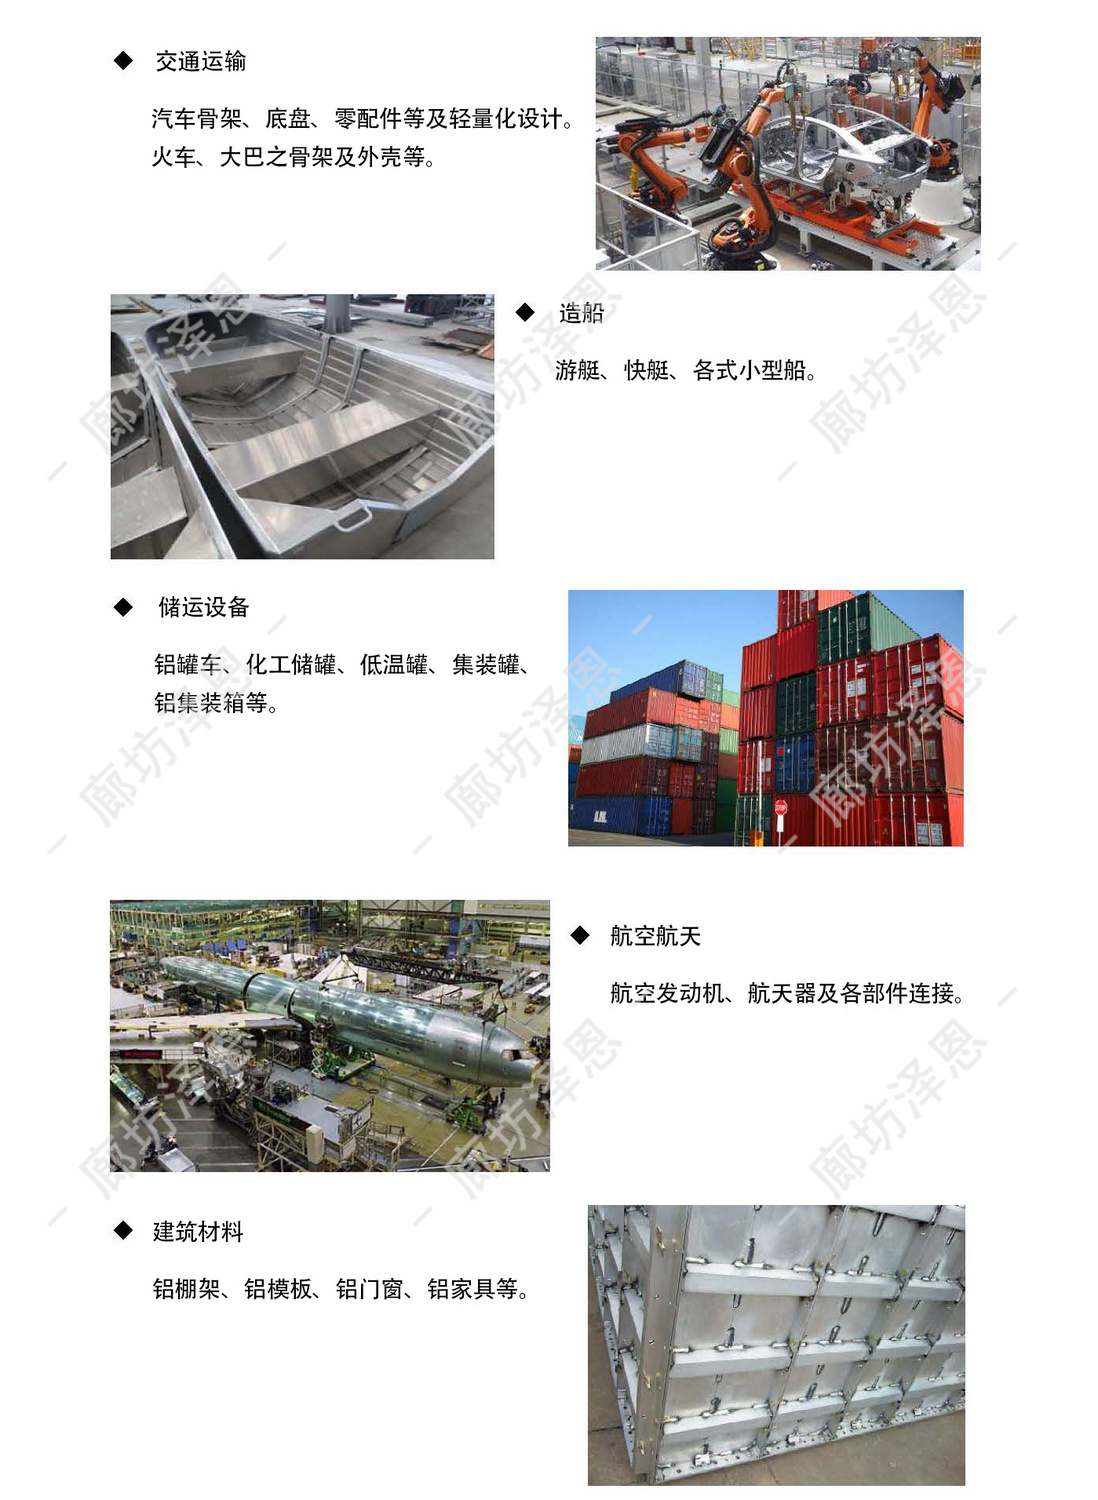 铝合金焊丝应用产业1.jpg